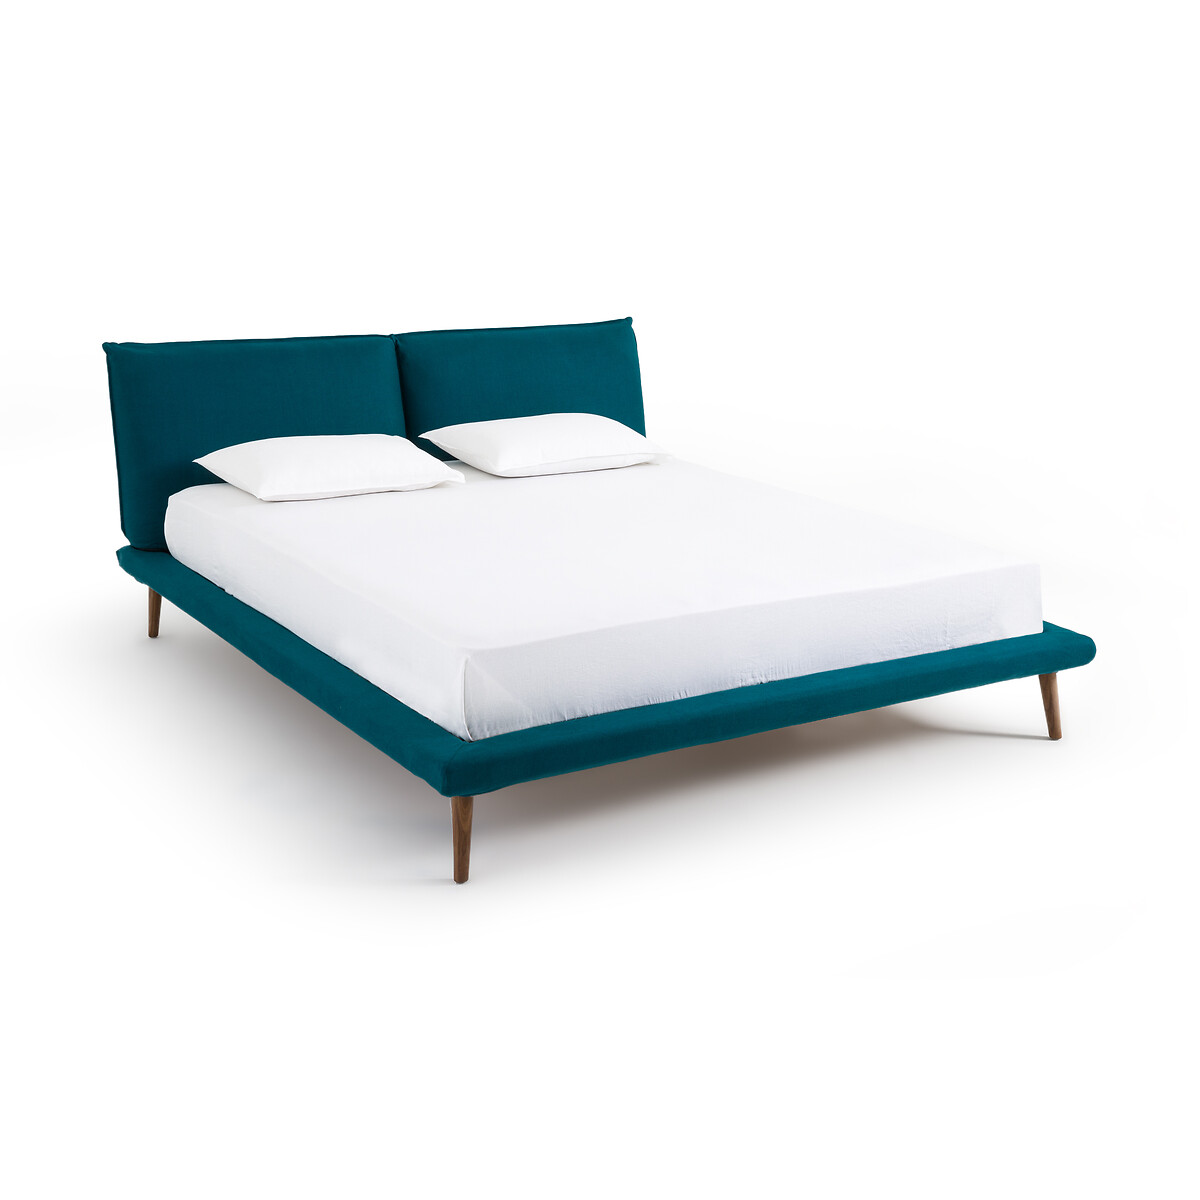 Кровать изо льна без кроватного основания Aurore дизайн Э  Галлина  160 x 200 см синий LaRedoute, размер 160 x 200 см